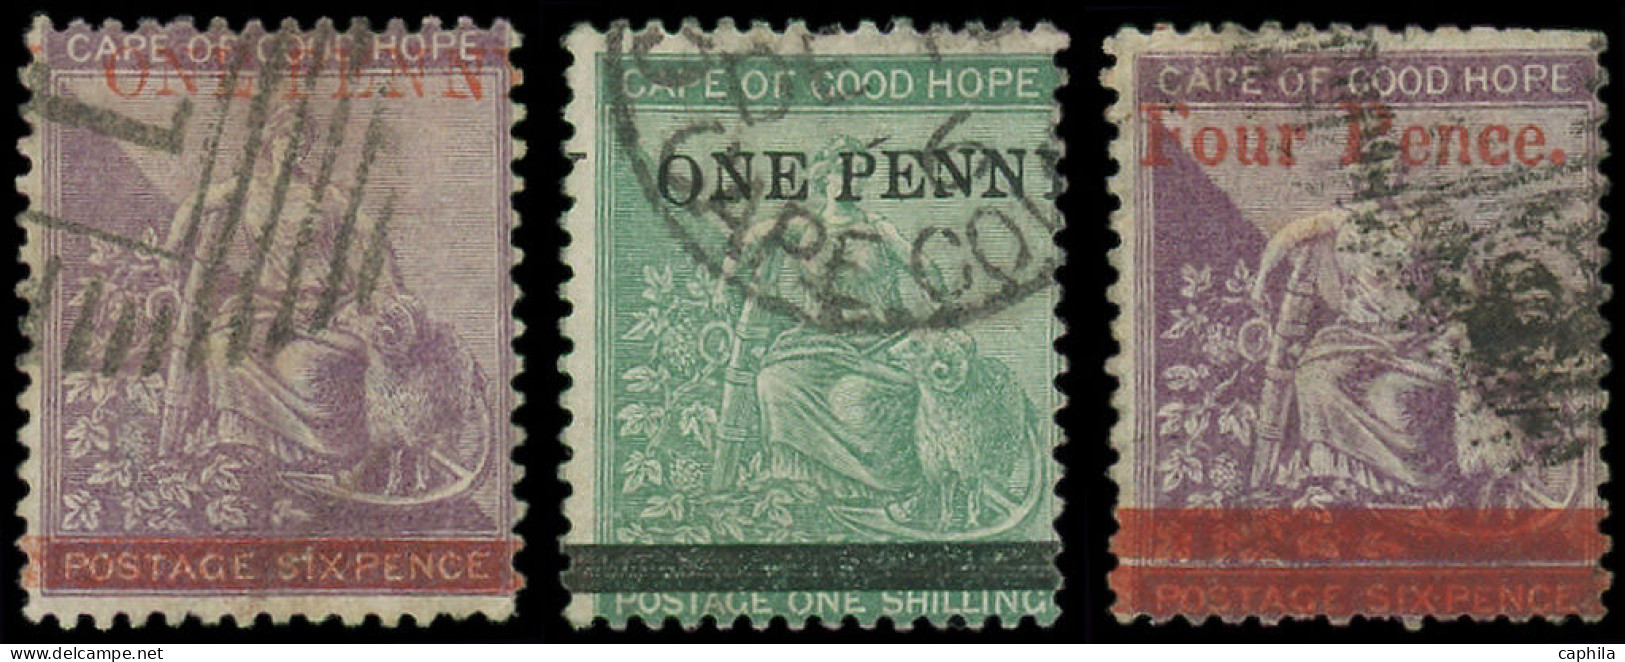 O CAP DE BONNE ESPERANCE - Poste - 18/20, Surchargés - Cape Of Good Hope (1853-1904)